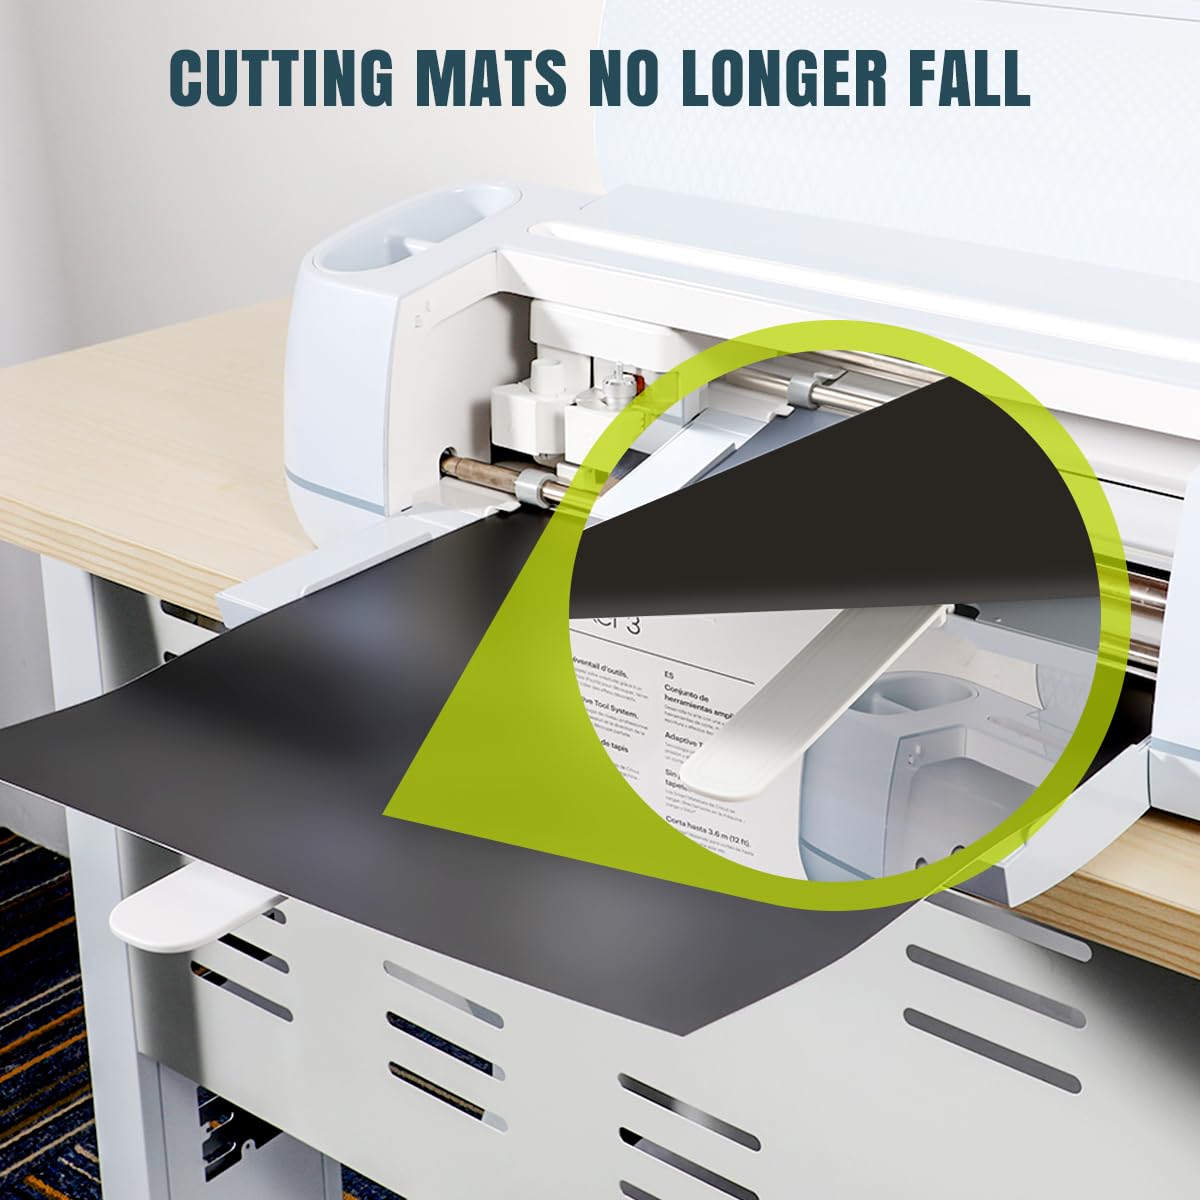 cutting mats no longer fall